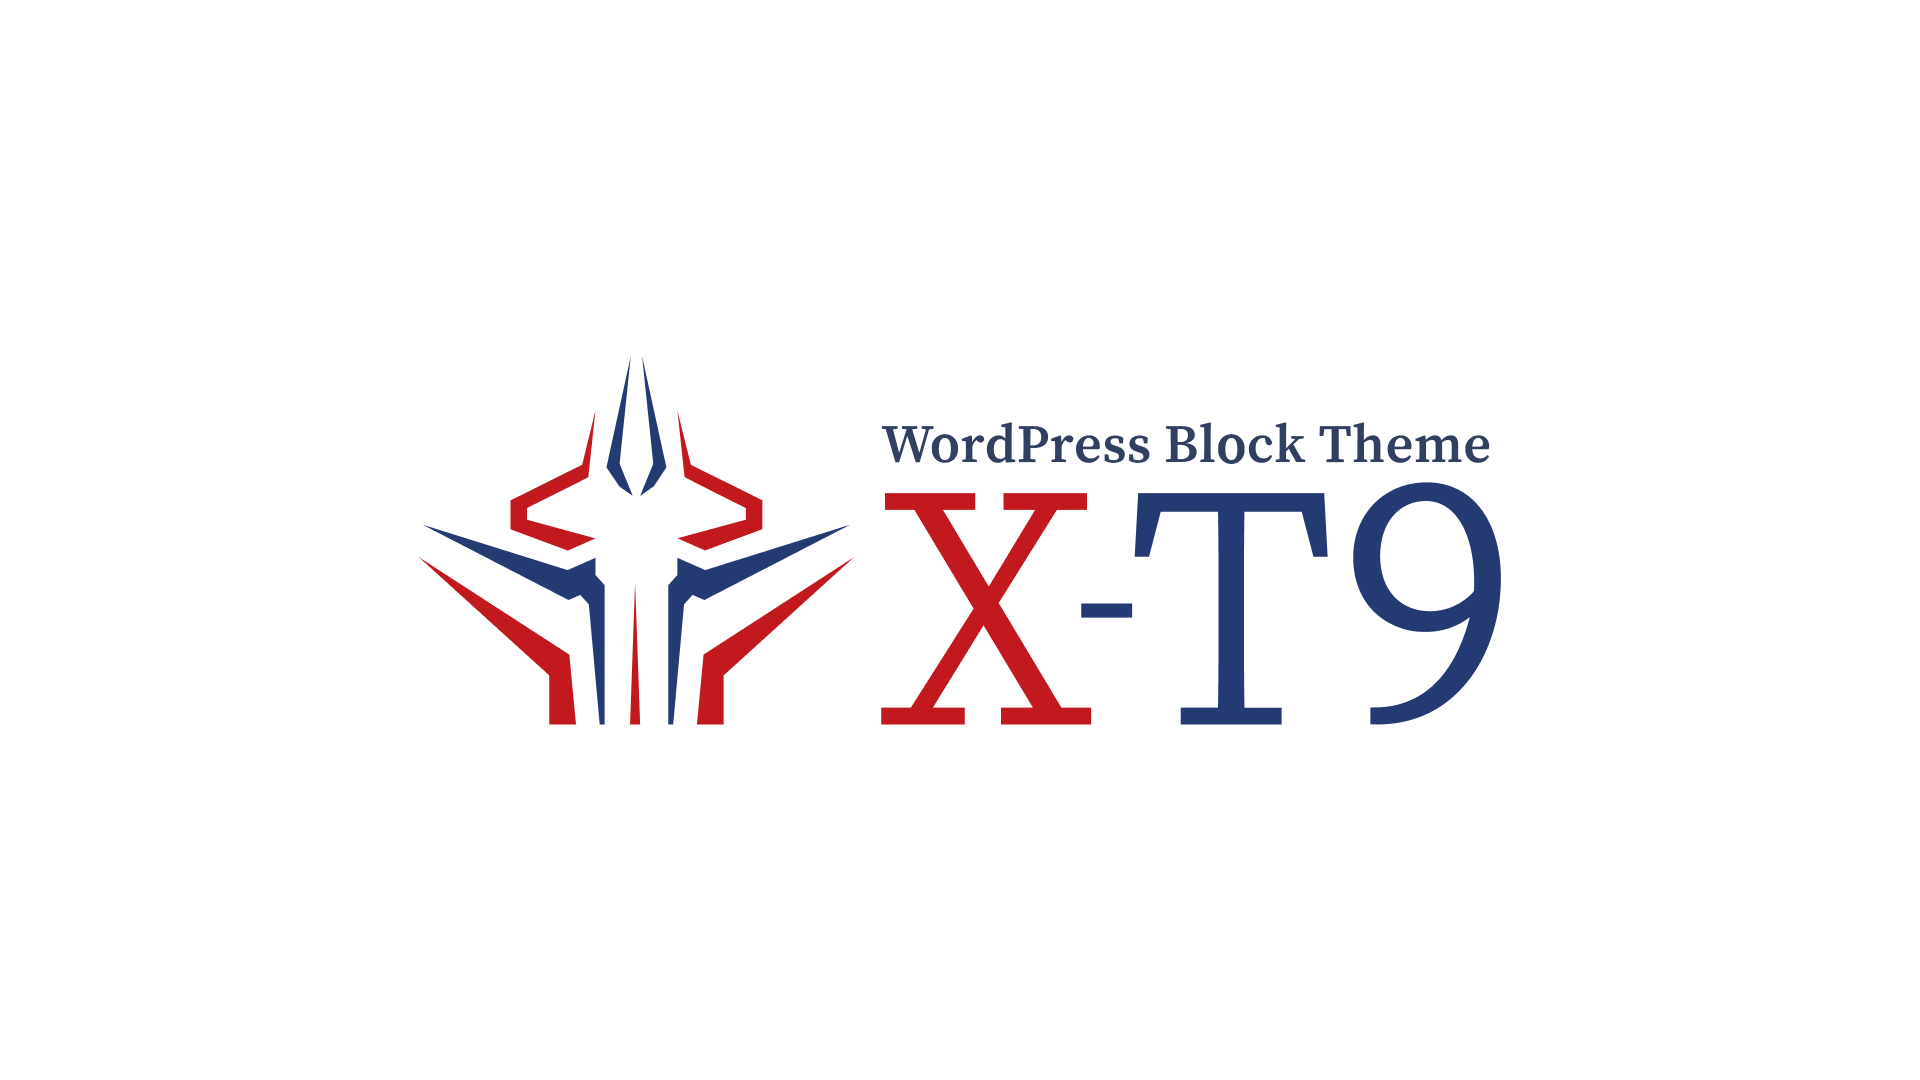 ブロックテーマ X-T9 を公開しました。